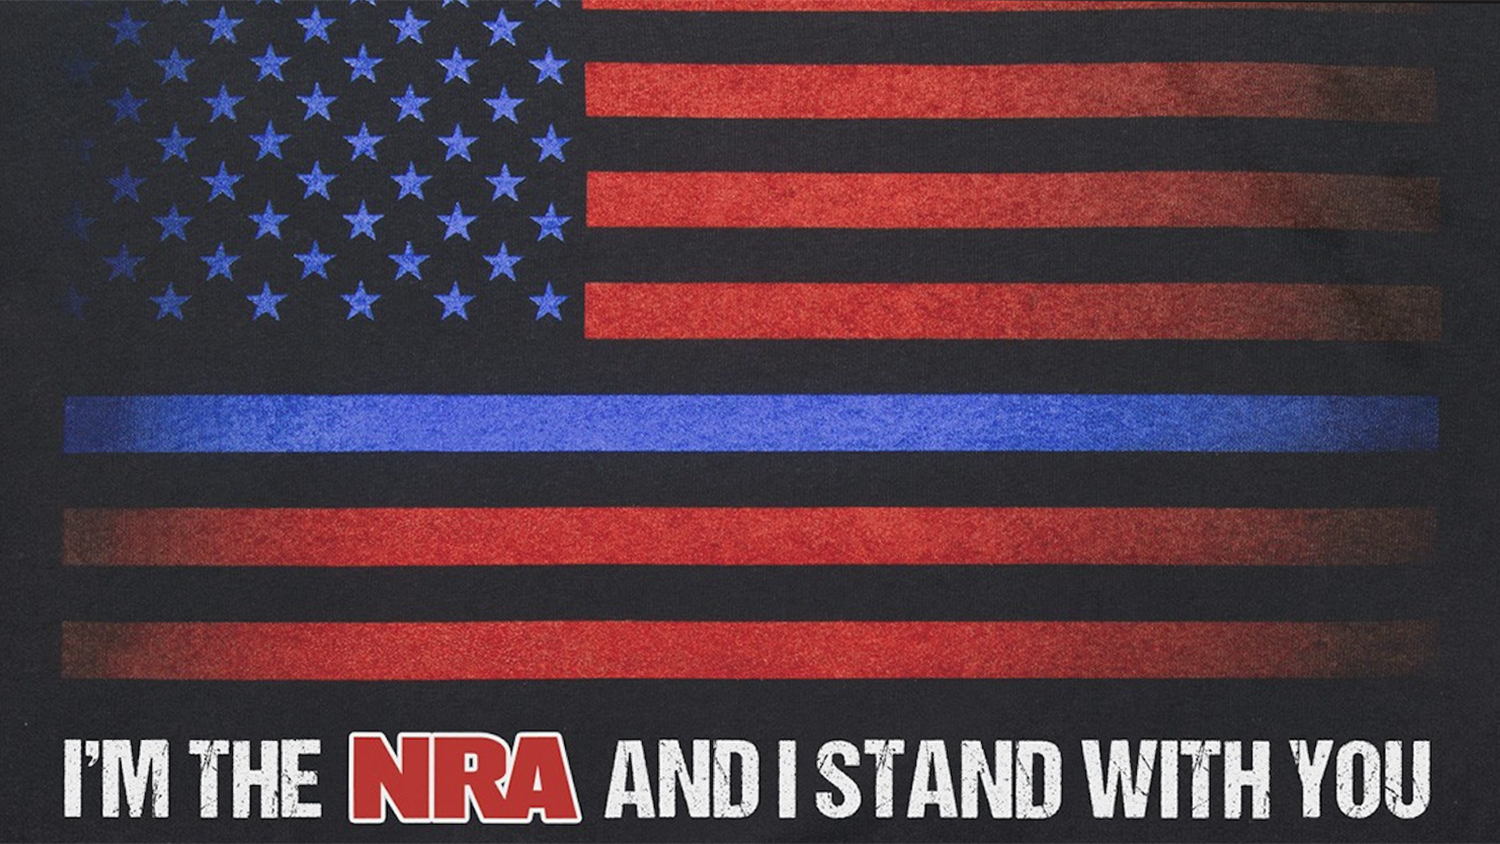 NRAstore ‘Thin Blue Line’ T-Shirt raises $39,000 for law enforcement